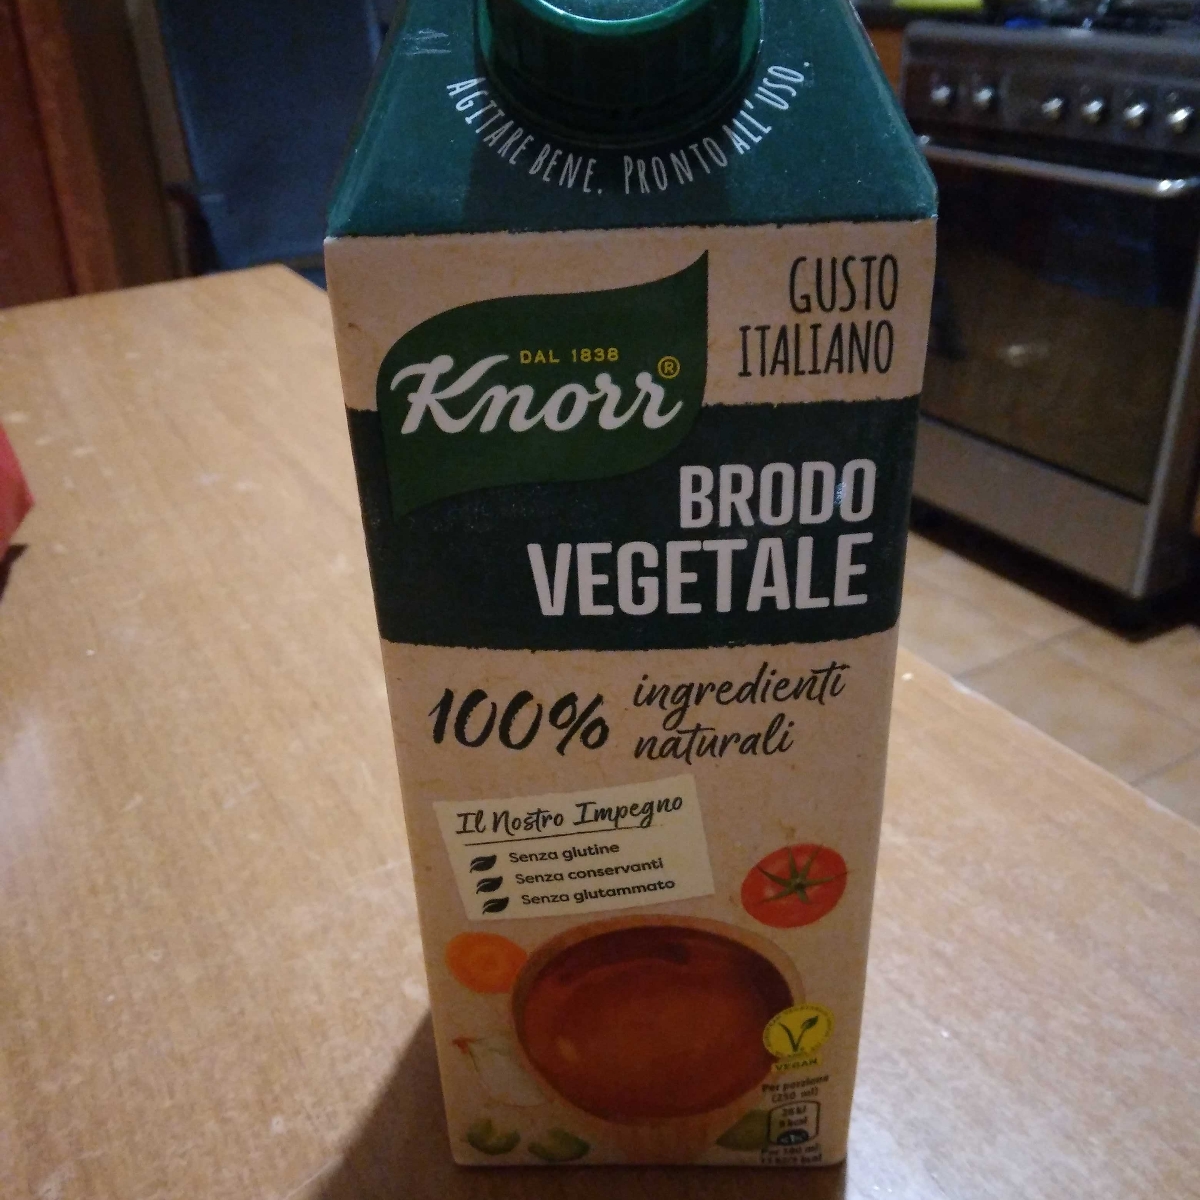 Brodo vegetale Knorr Brodo Vegetale Knorr Review | abillion